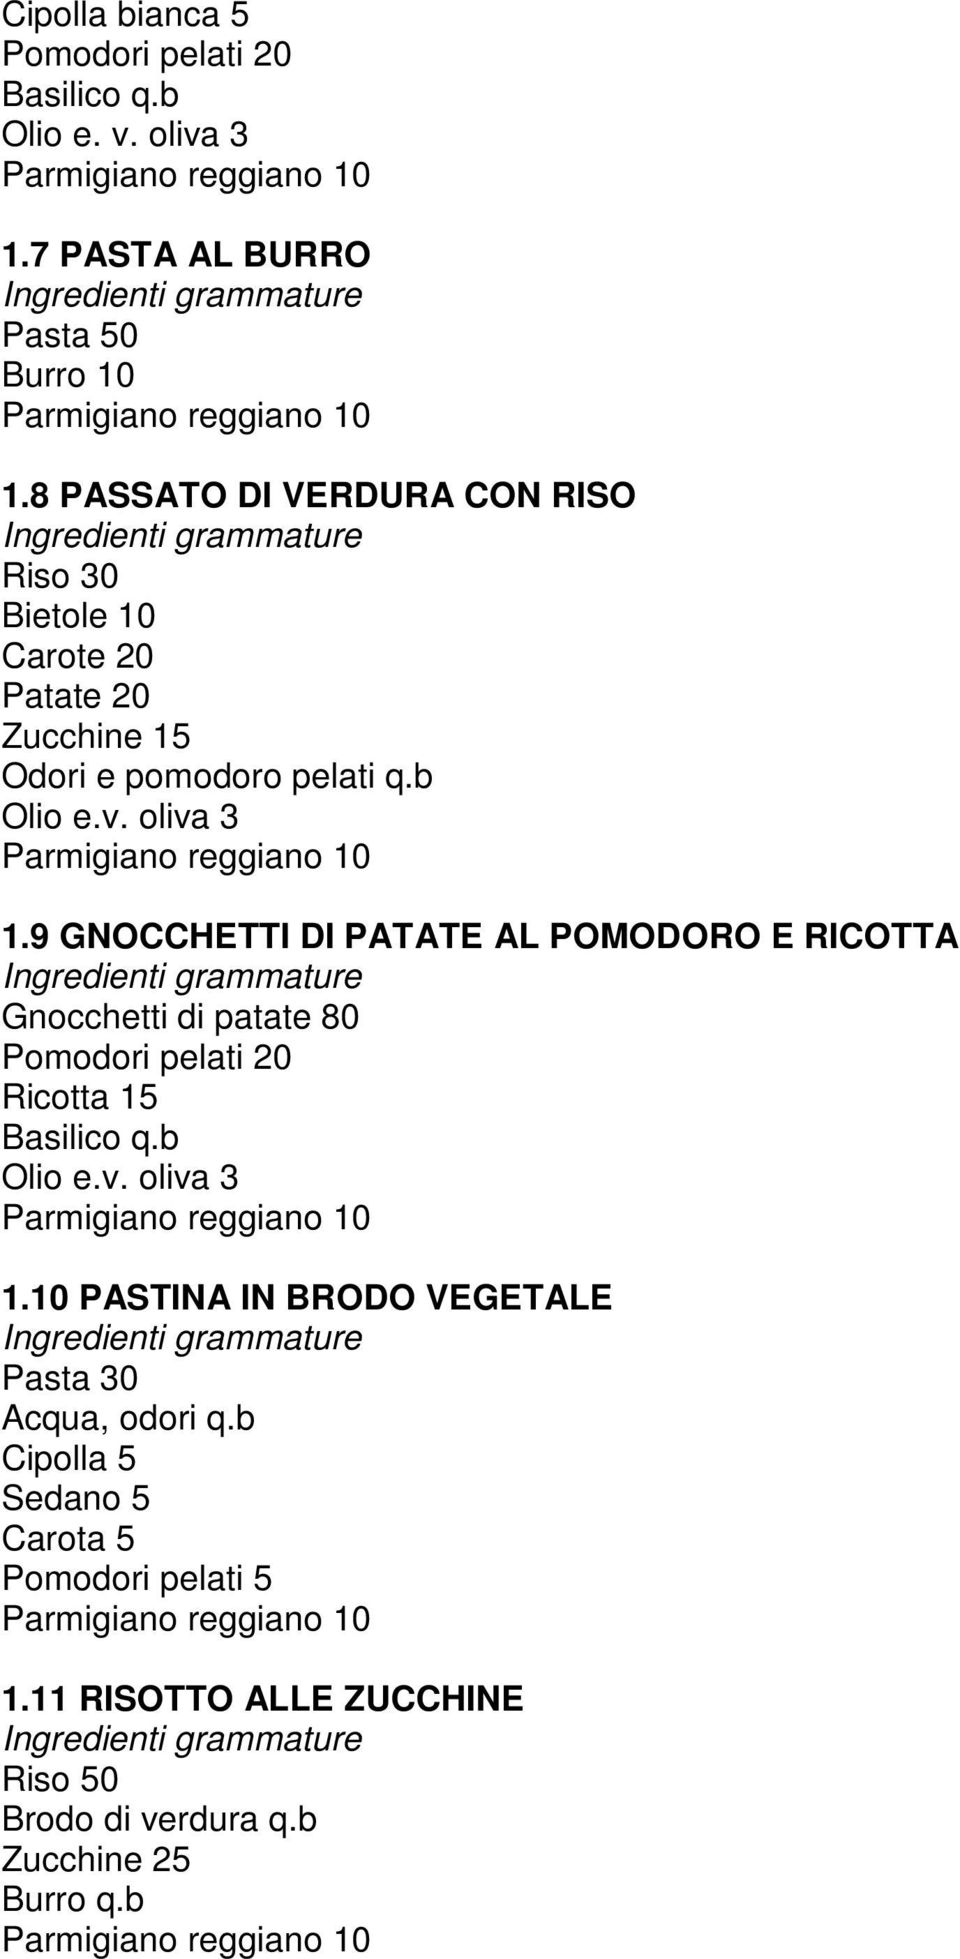 9 GNOCCHETTI DI PATATE AL POMODORO E RICOTTA Gnocchetti di patate 80 Pomodori pelati 20 Ricotta 15 Basilico q.b 1.